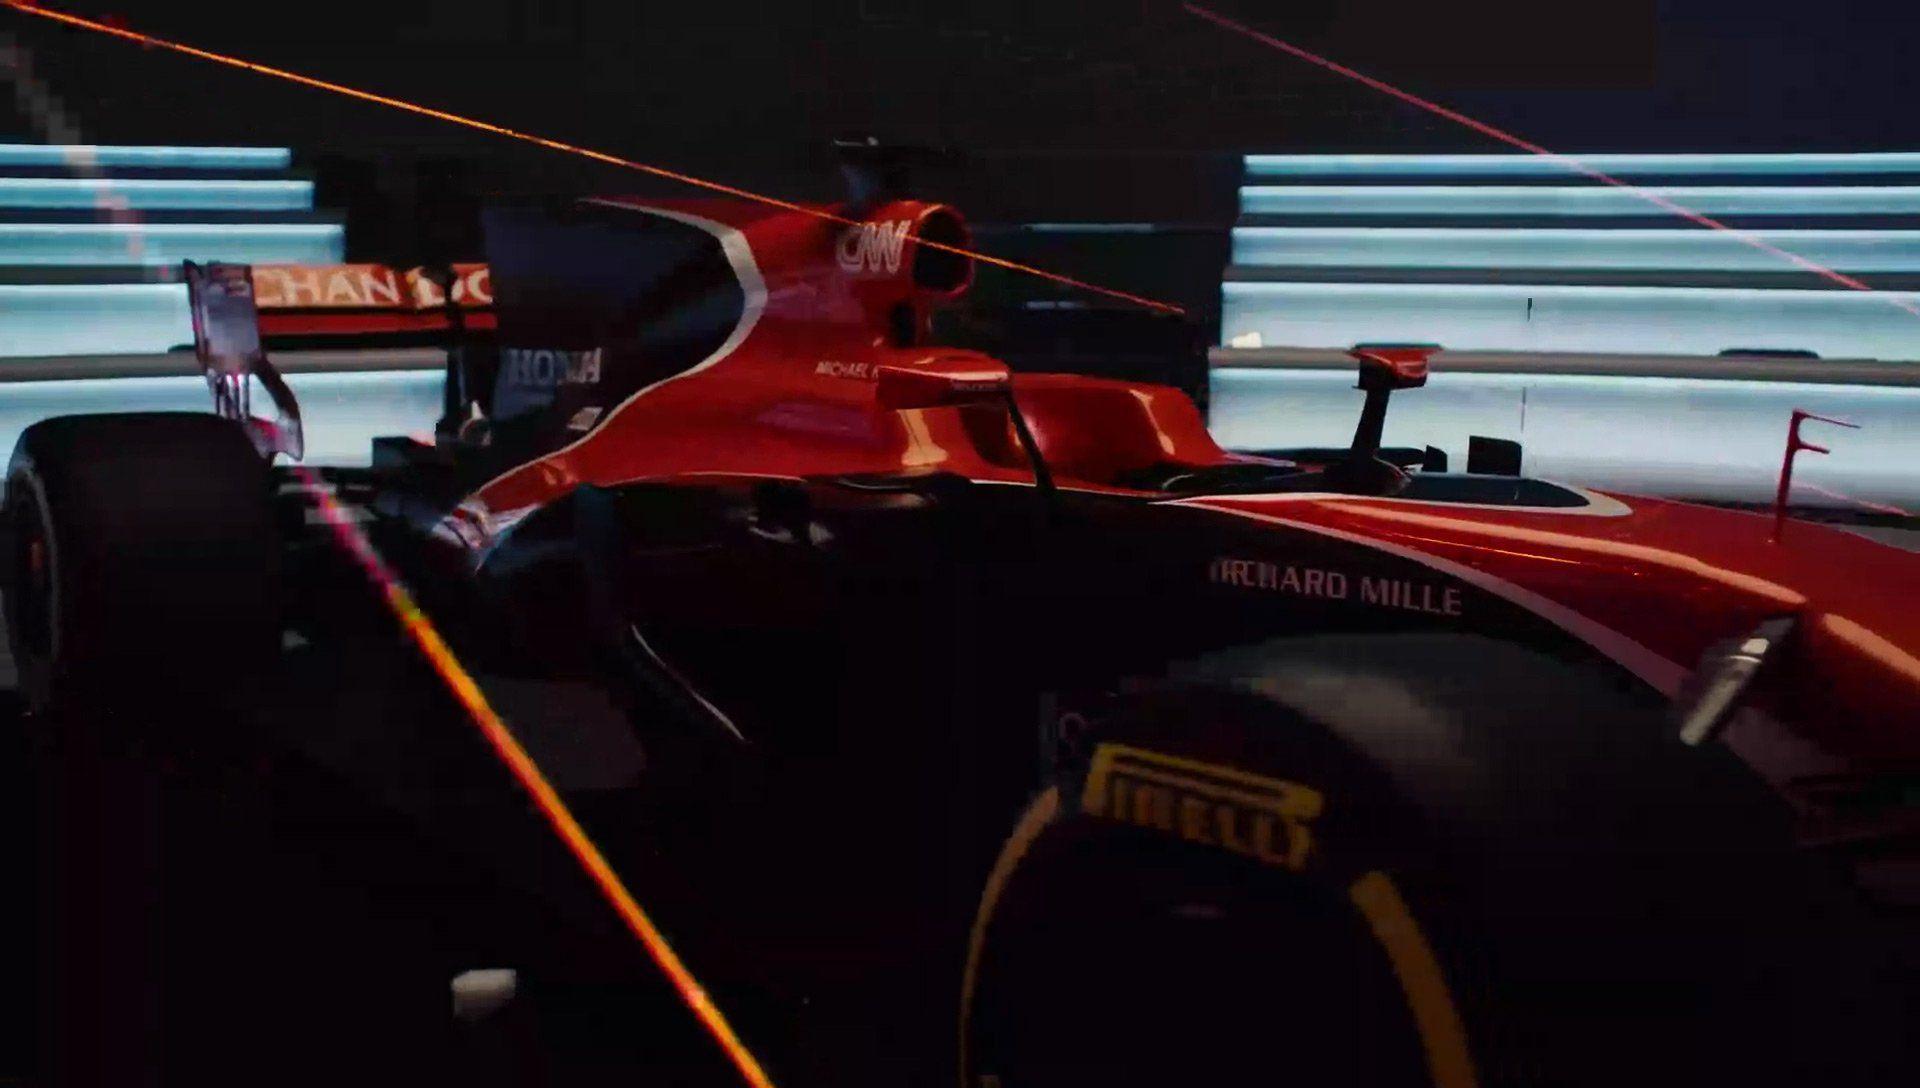 The Official McLaren Website